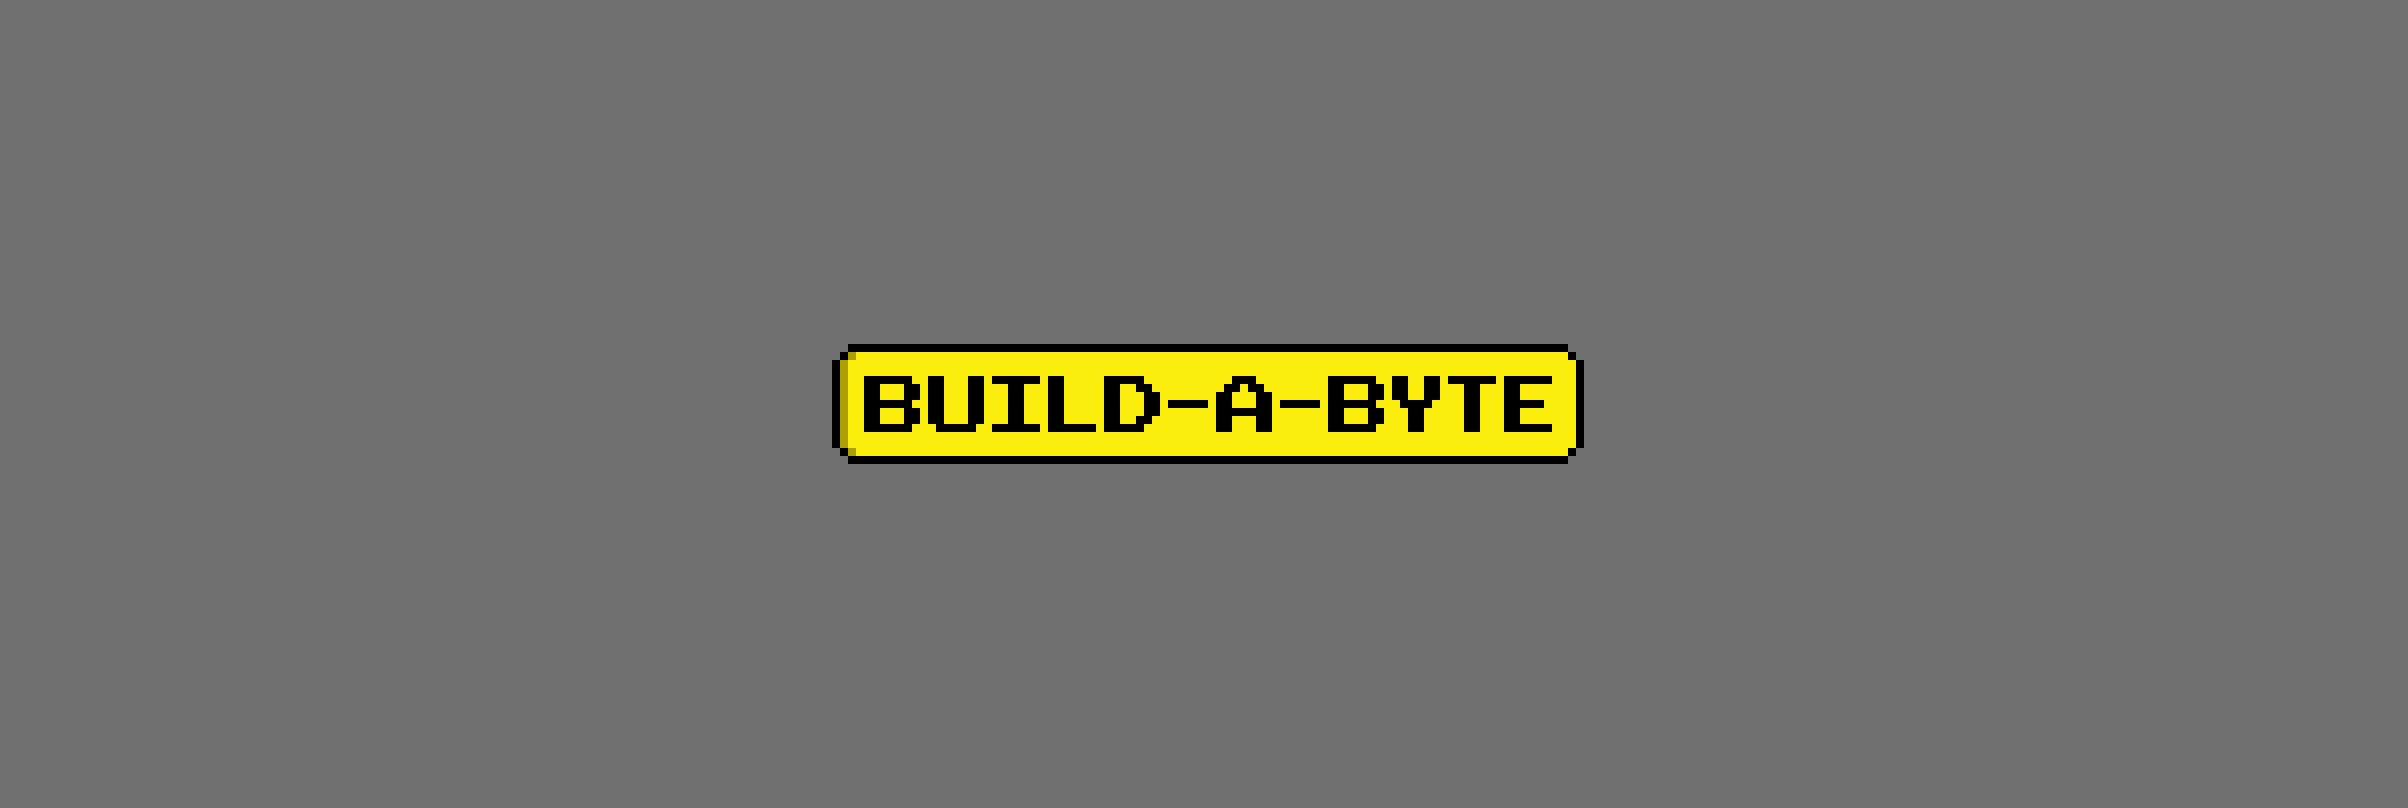 Build-A-Byte 배너